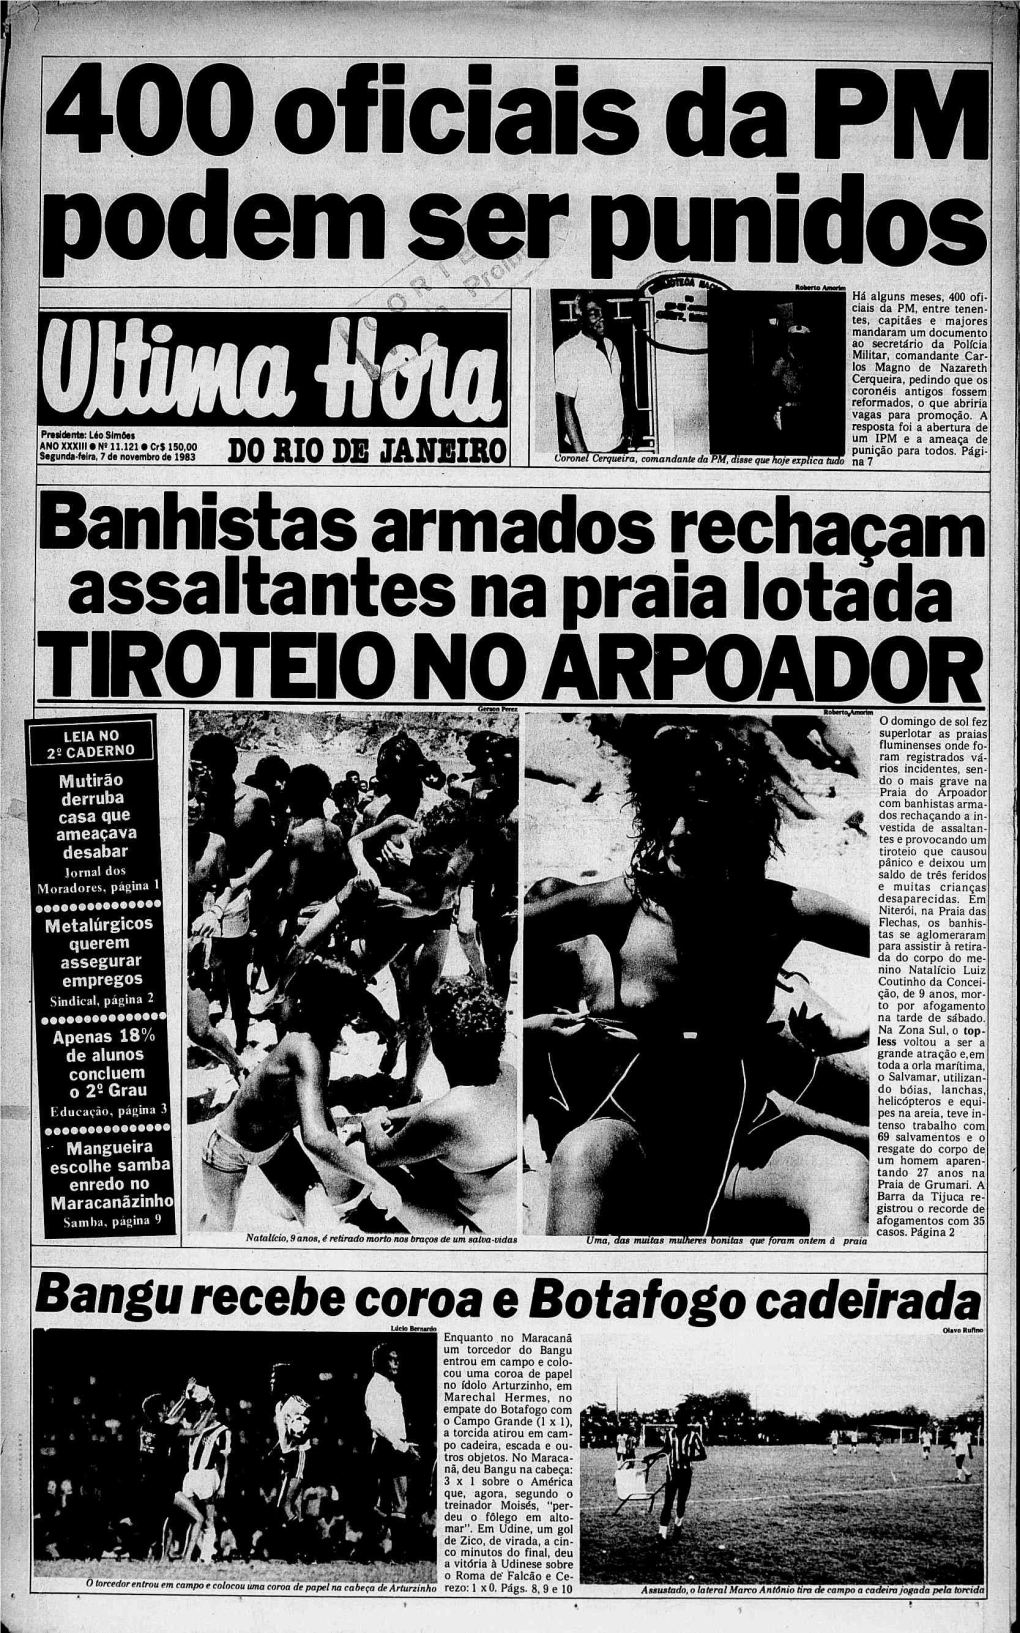 Bangu Recebe Coroa E Botafogo Cadeirada